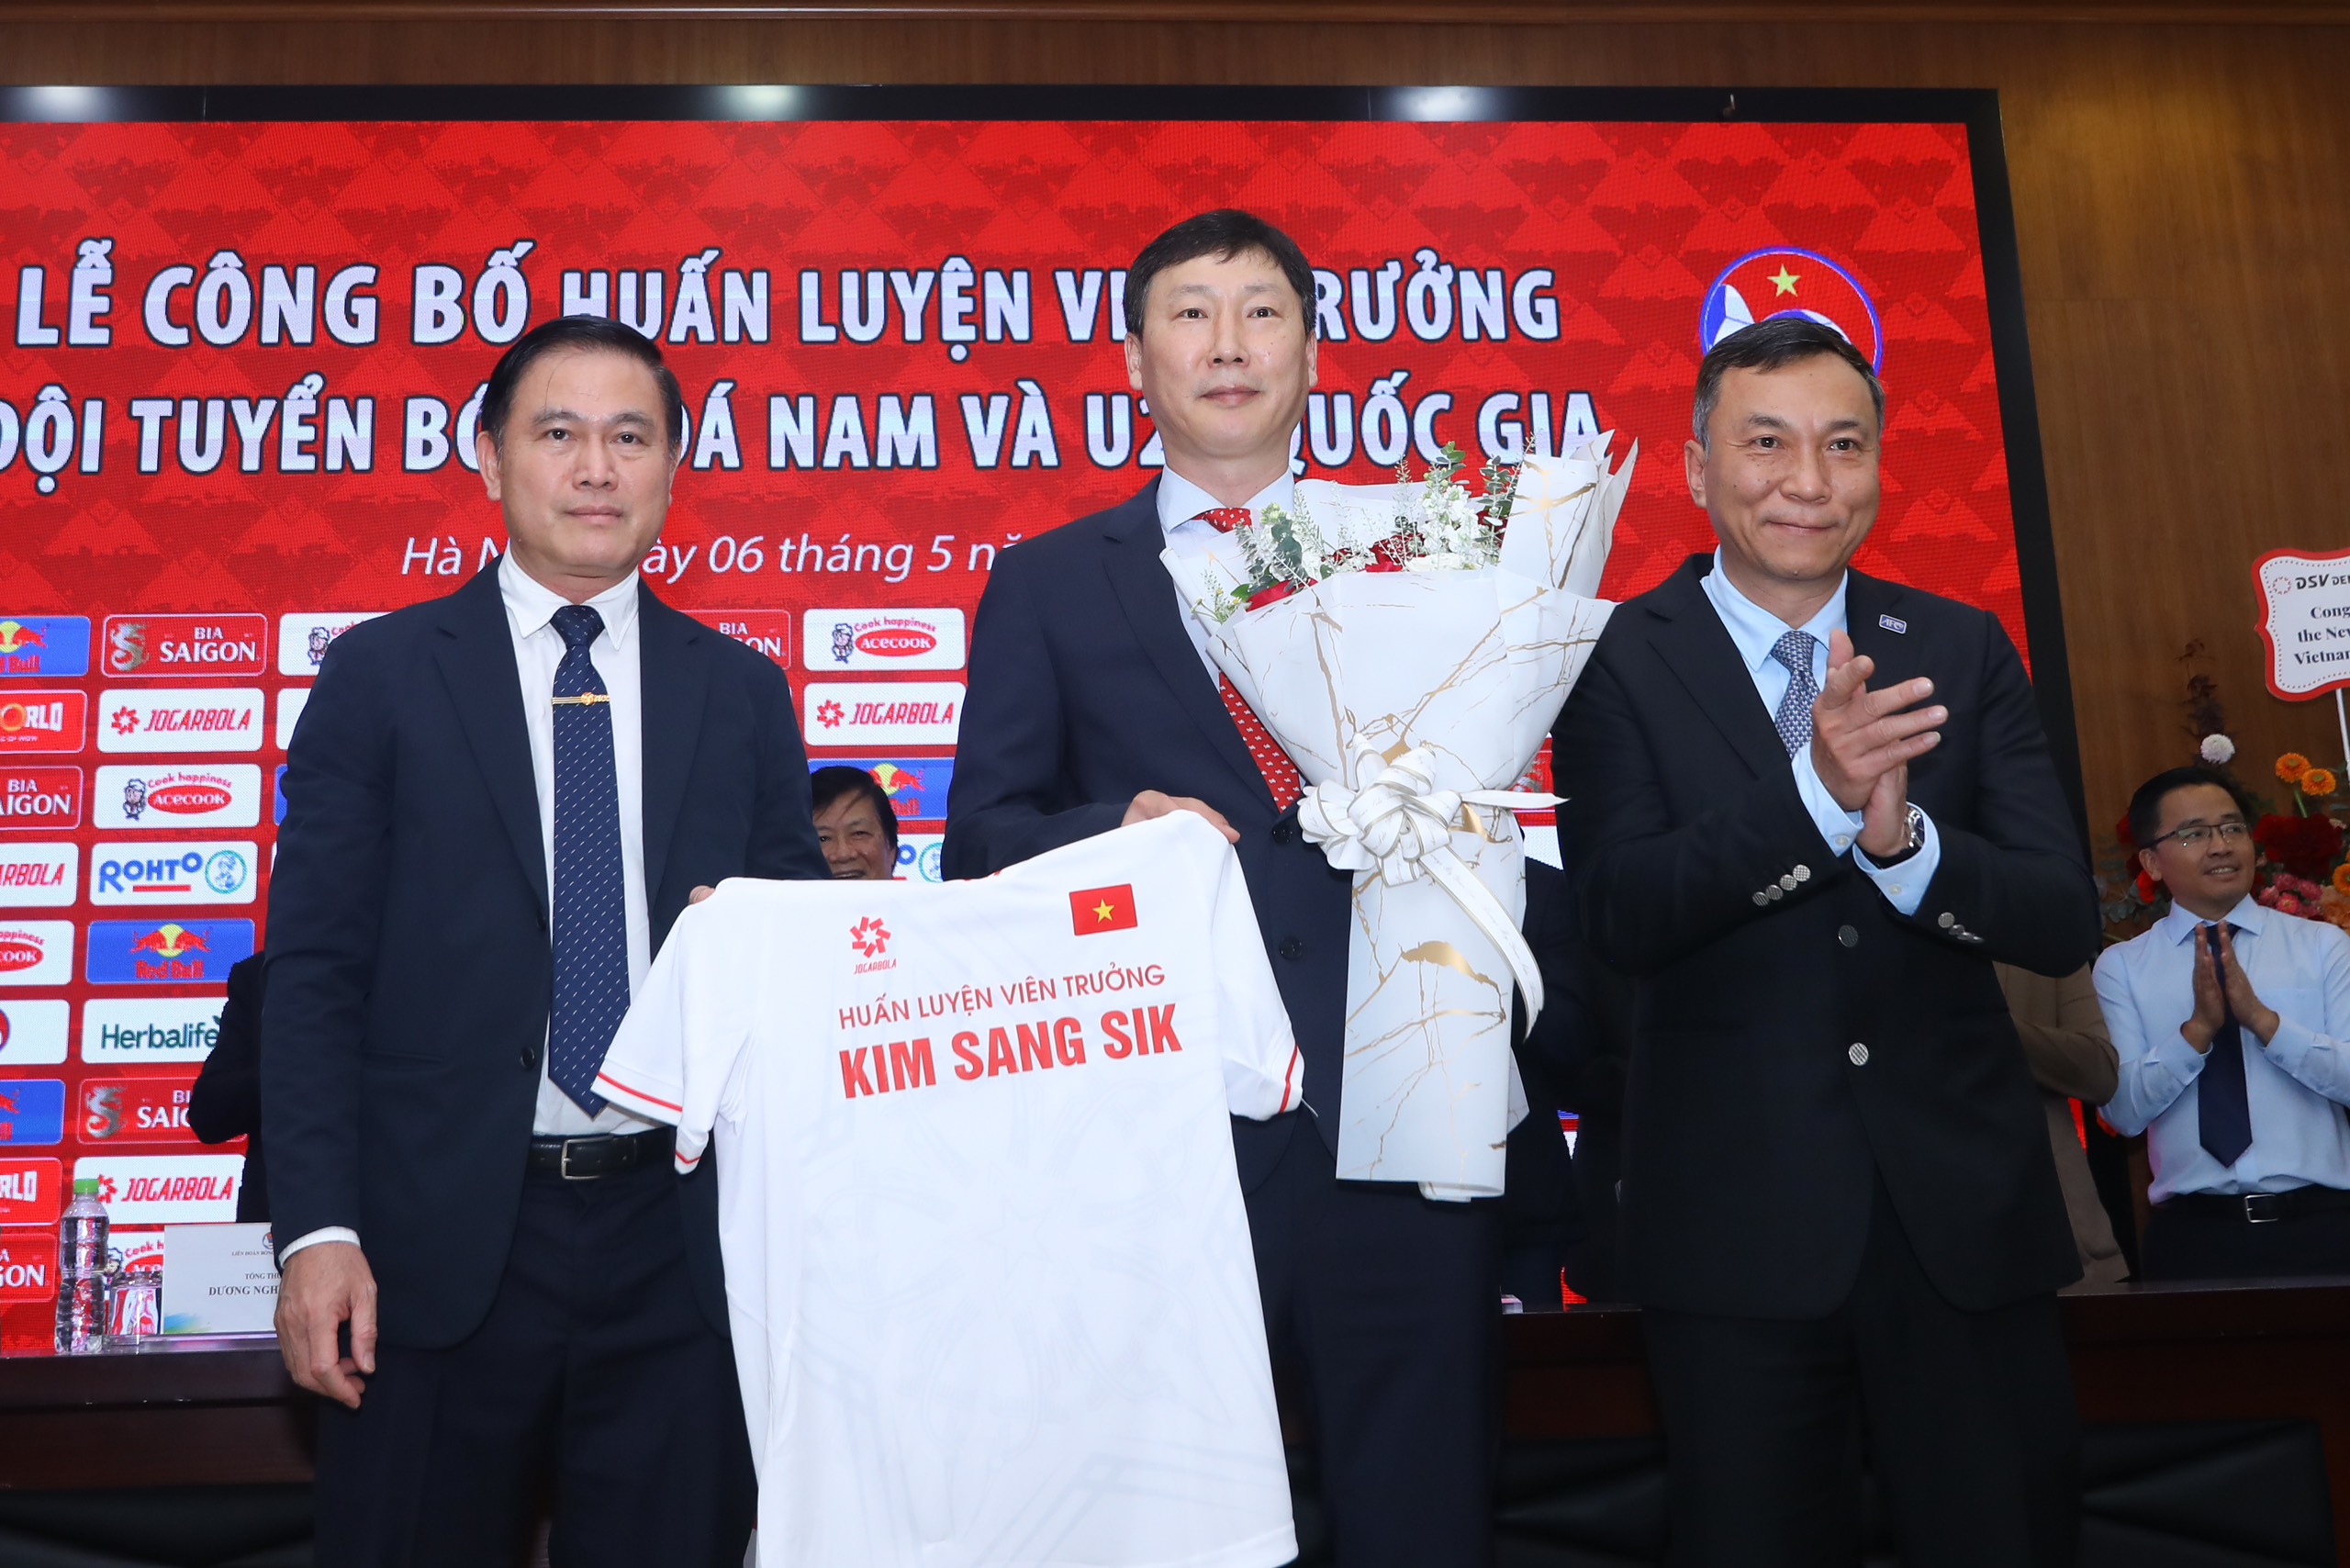 HLV Hoàng Văn Phúc: 'Thông điệp mới, xung lực mới cho bóng đá Việt Nam' - Ảnh 2.